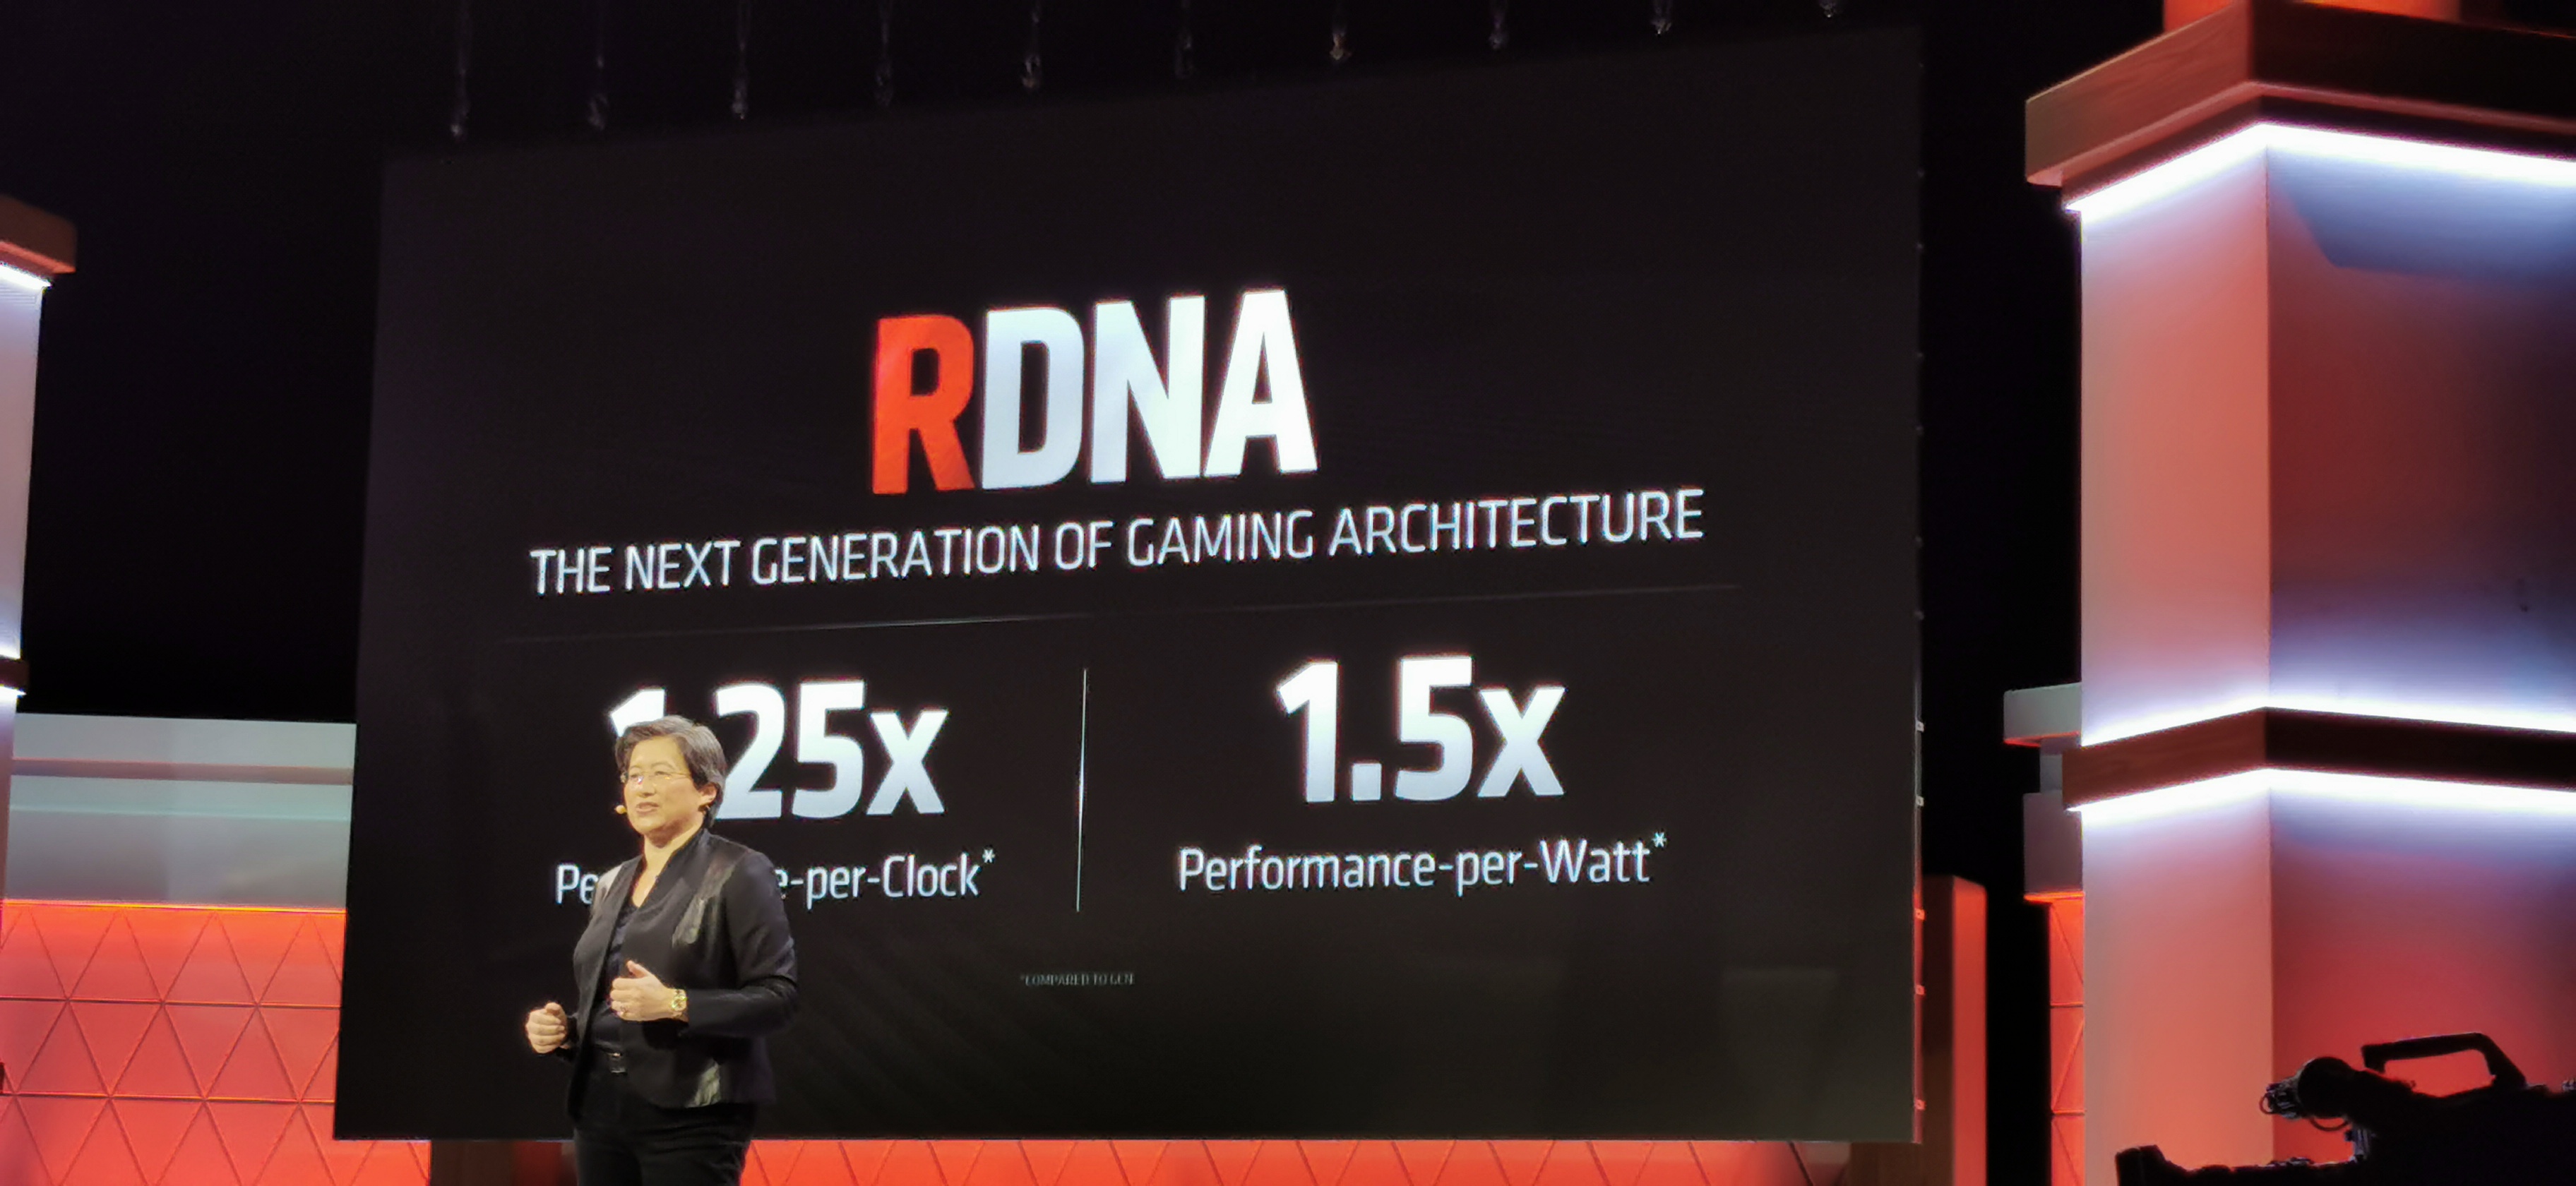 هل فاتك ما أعلن في مؤتمر AMD Next Horizon Gaming؟ هنا ستجد كل ما تم الكشف عنه